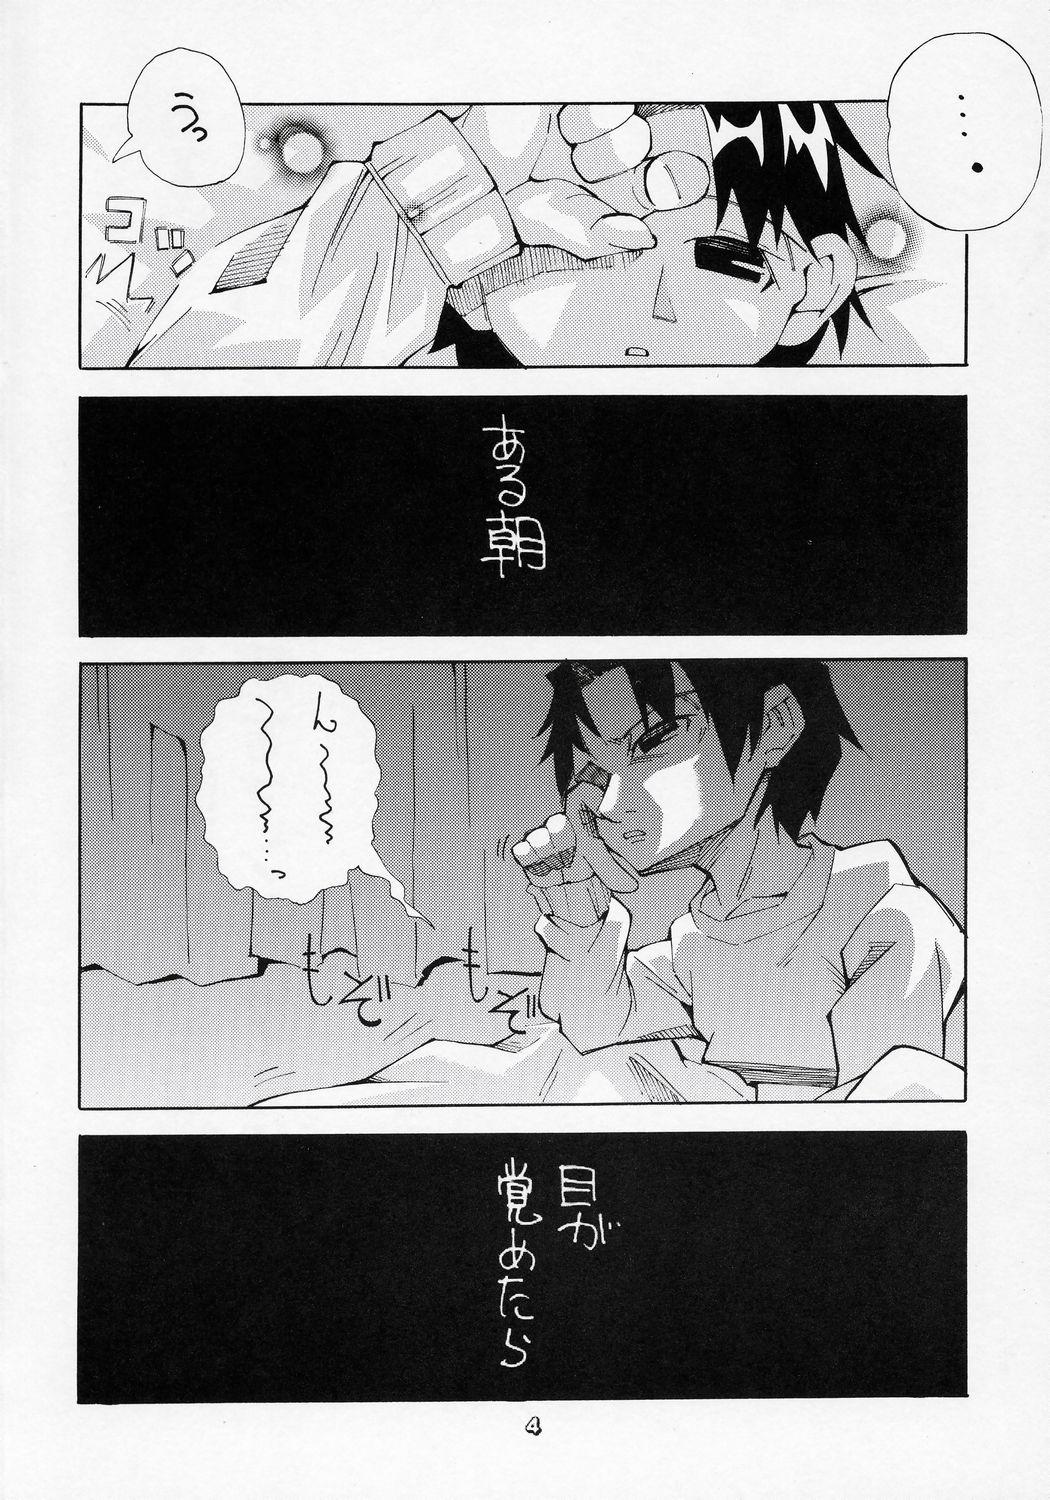 Fake Tits Aru Asa, Me ga Sametara Ningen ni Natta Suiseiseki ga Tonari ni Ita to Iu Mousou o Manga ni Shita Hon. - Rozen maiden Bus - Page 3